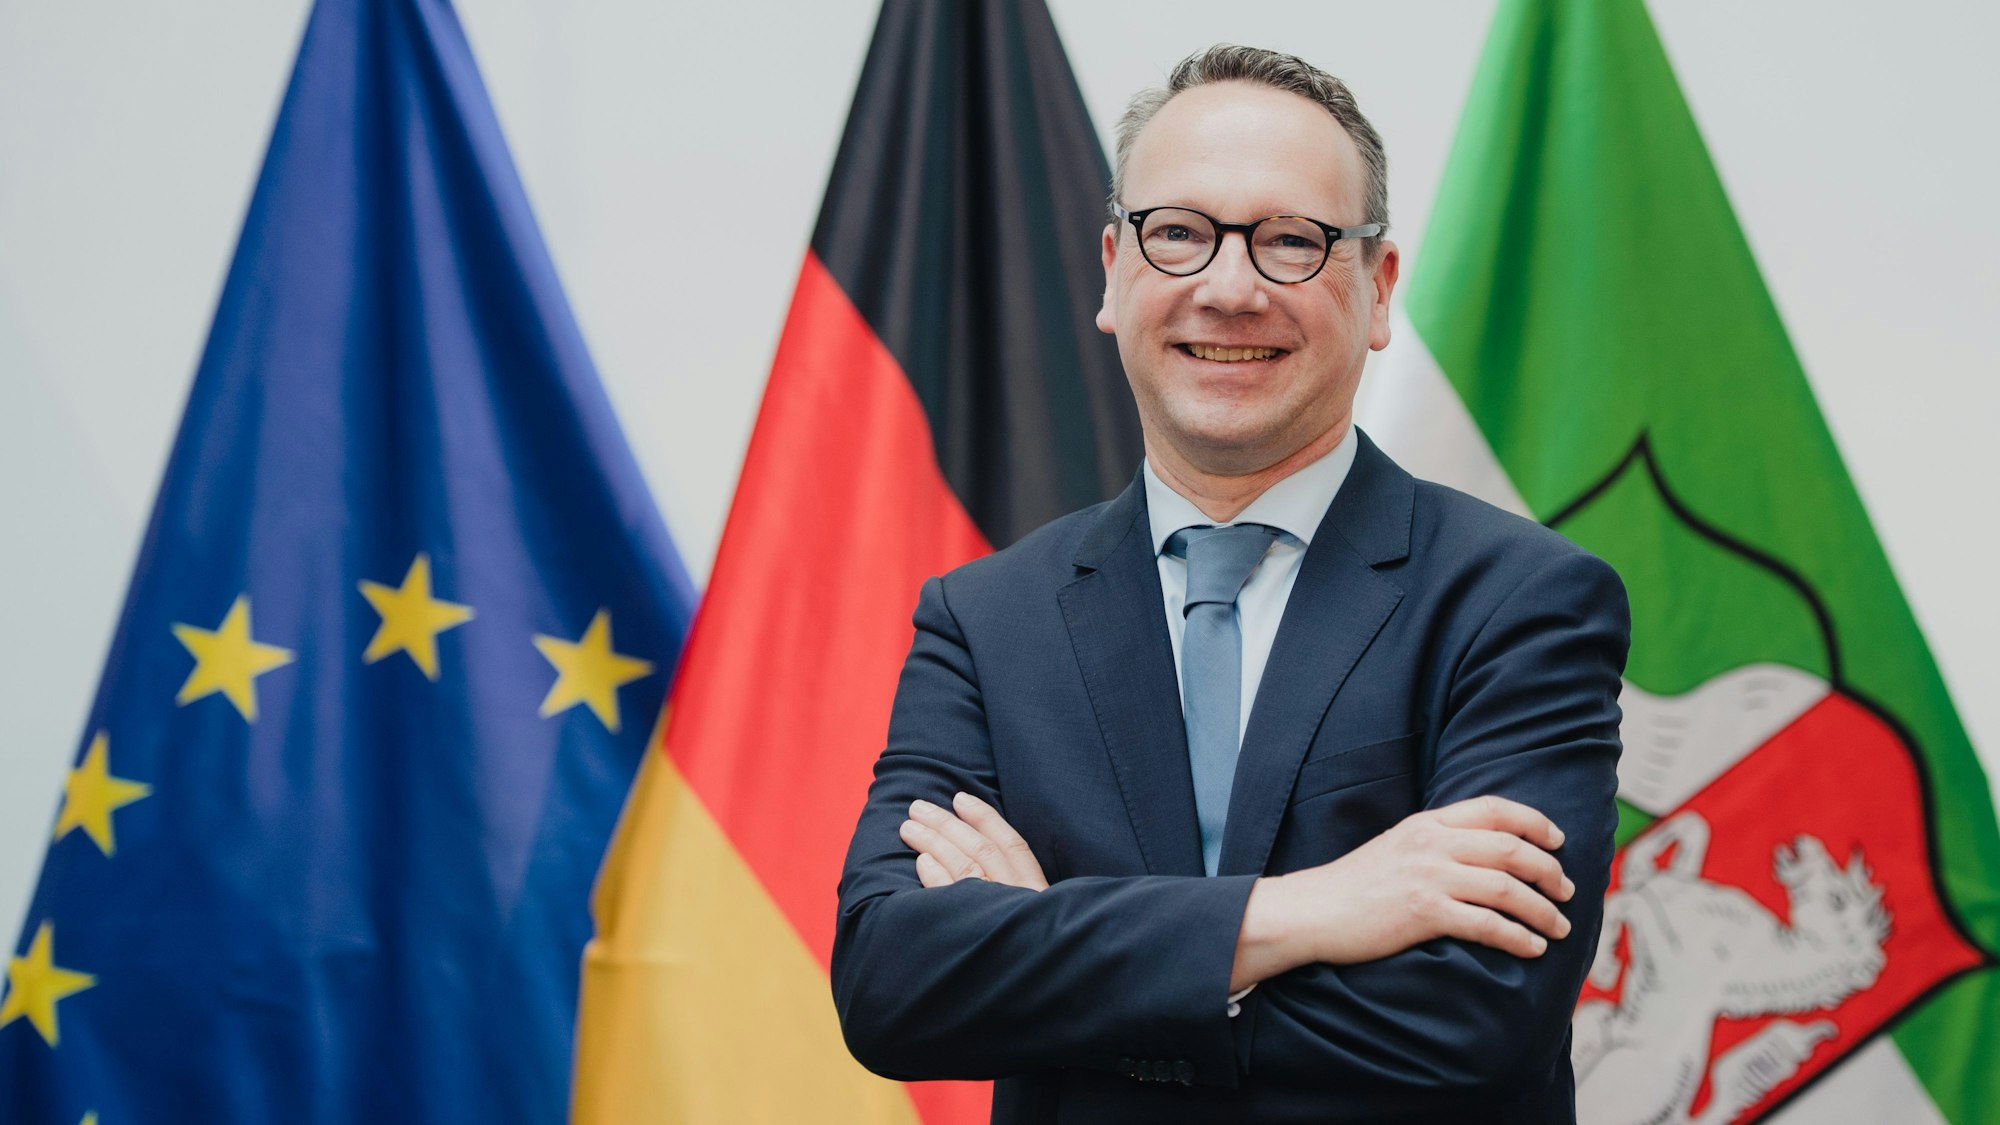 Benjamin Limbach, Minister der Justiz von Nordrhein-Westfalen, aufgenommen am Rande der Ernennung des neues Landeskabinetts.